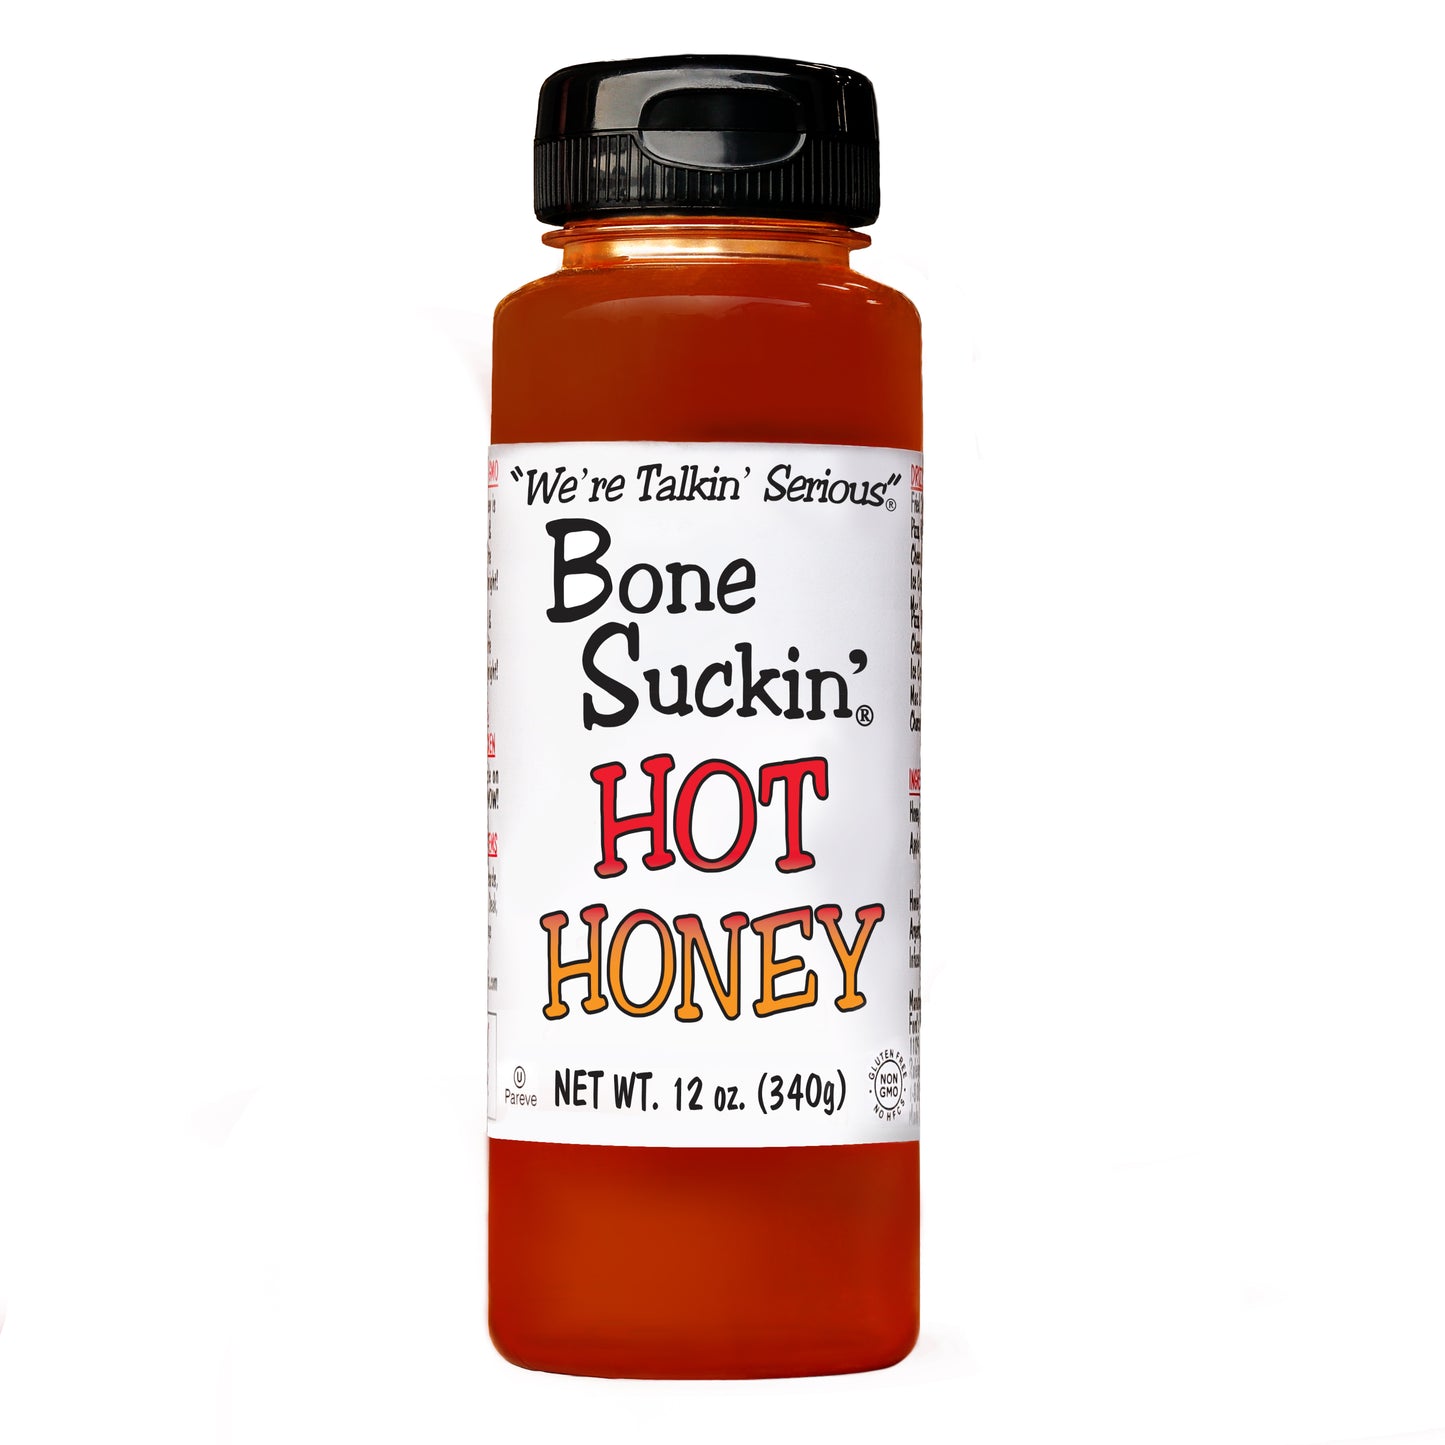 Bone Suckin Hot Honey 12oz Bone Suckin' Hot Honey is the perfect balance of heat & sweet. Wake up your favorite dish & try something new!